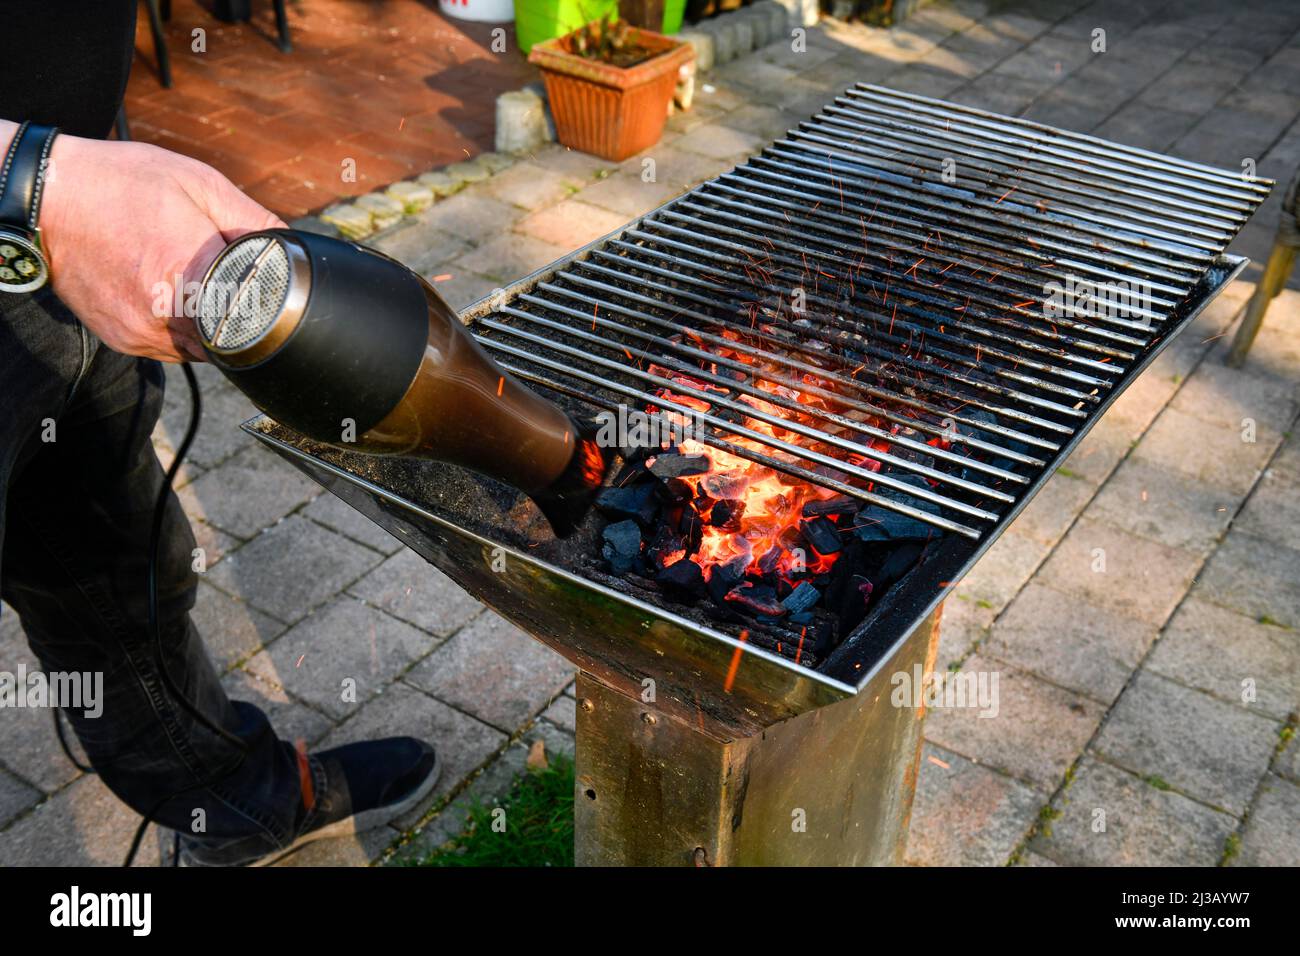 Asciugacapelli, grill a carbone caldo Foto Stock